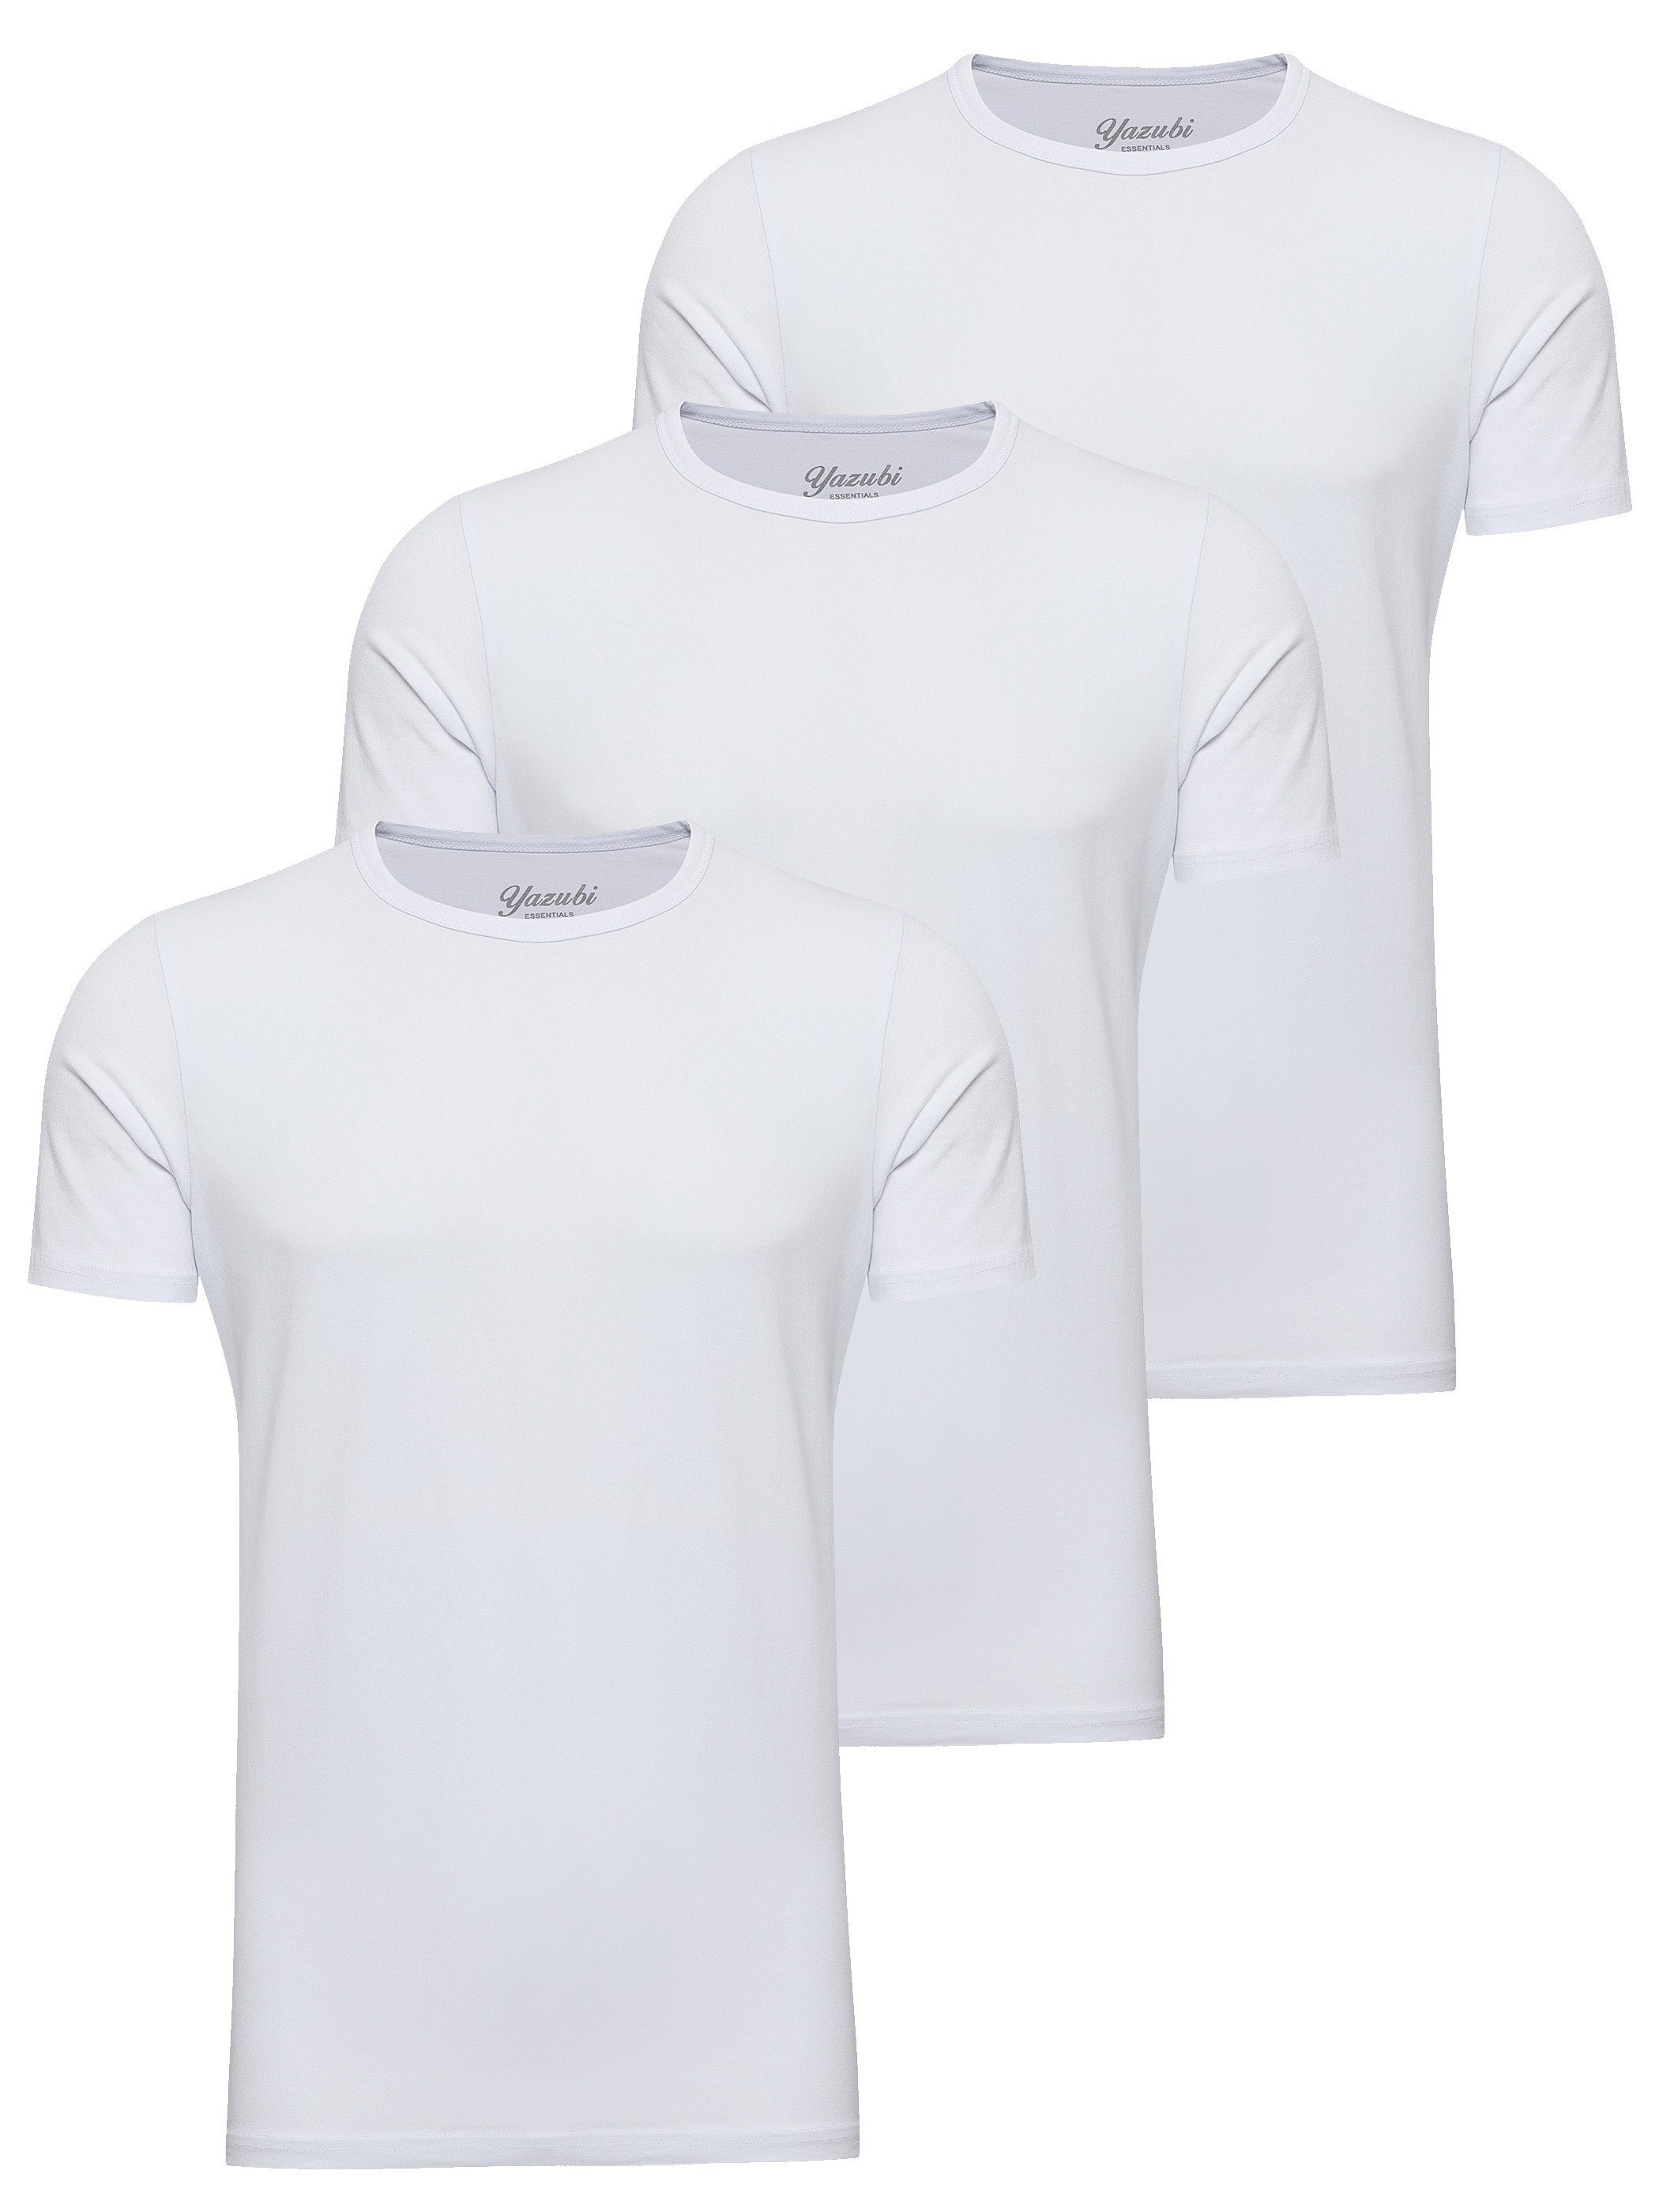 T-Shirt 3-Pack white Yazubi Neck modernes Mythic Basic Rundhalsshirt T-Shirt ( (Set) Crew brilliant 114001) Weiß